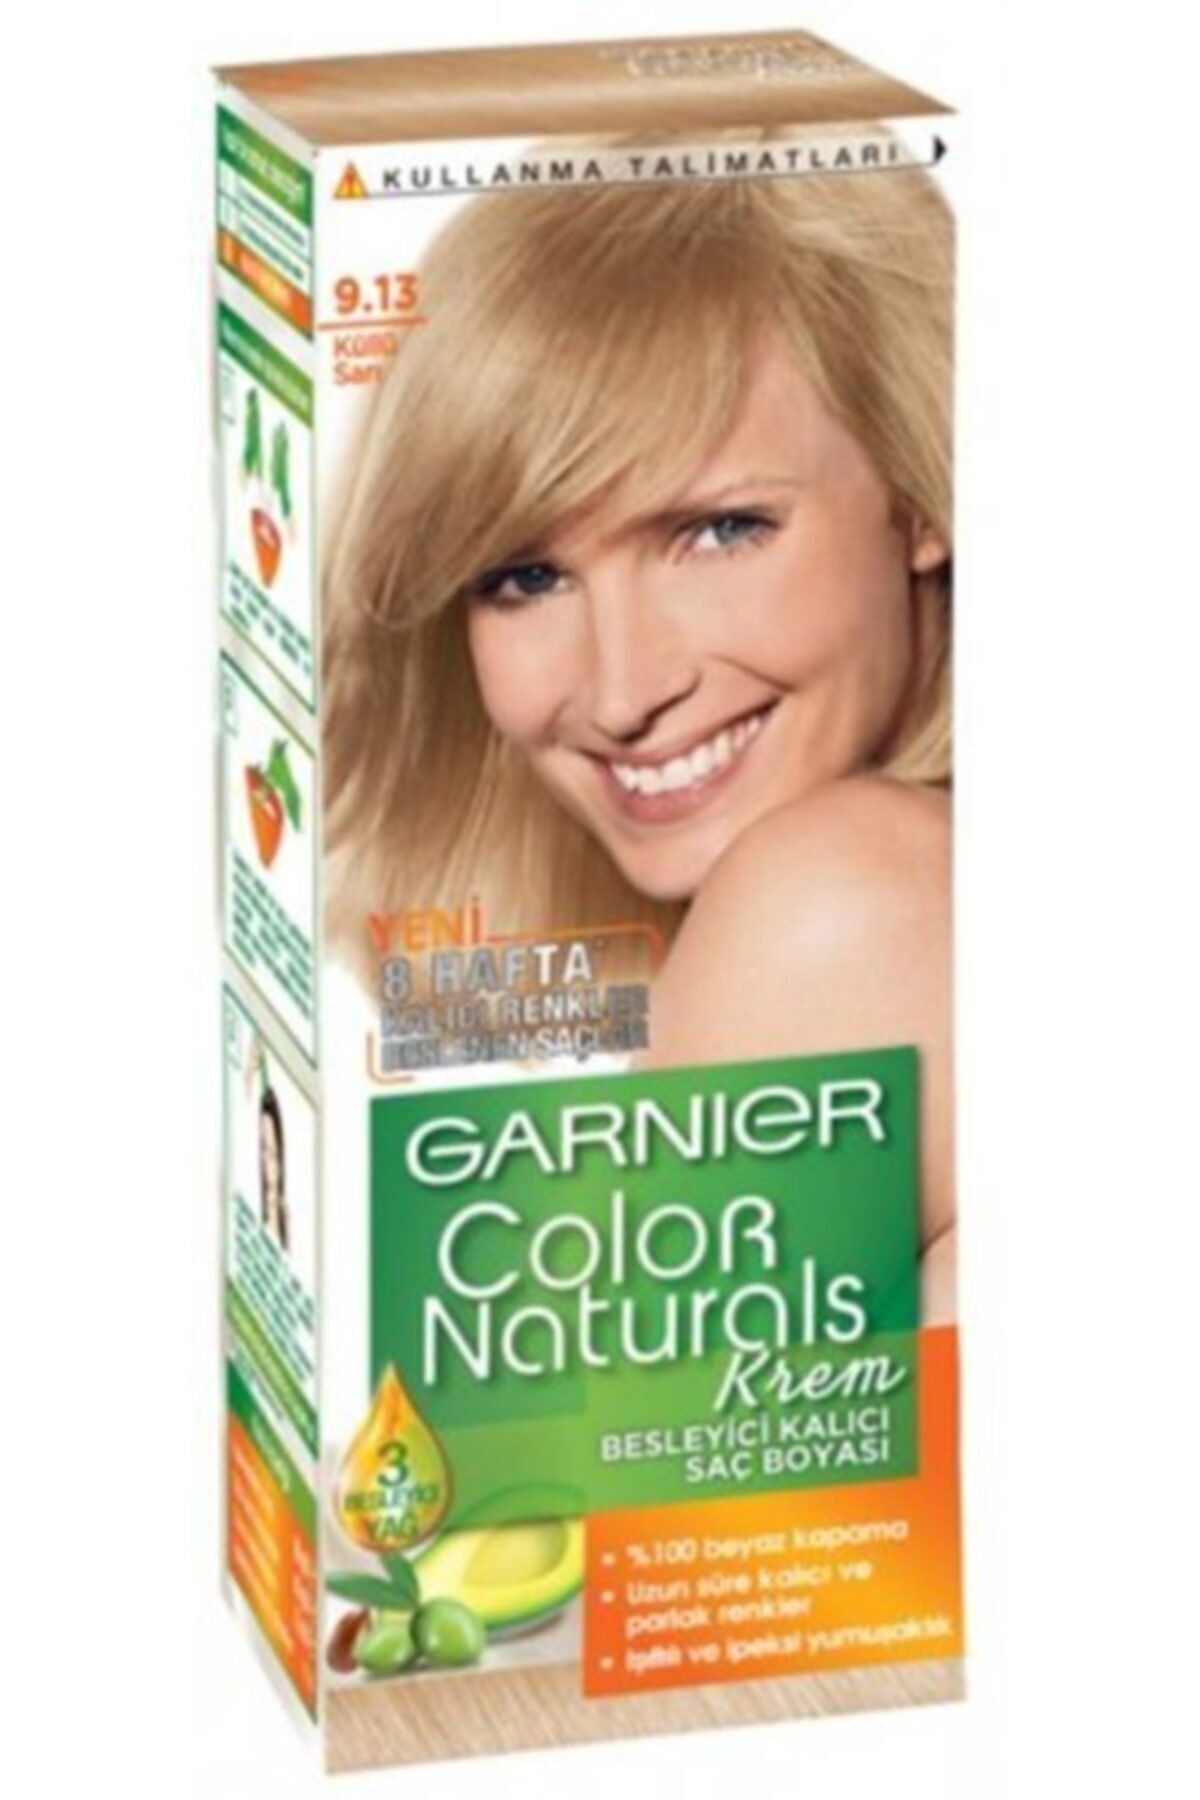 Гарньер для светлых волос. Краска для волос Garnier Color naturals 9.0. Краска гарньер колор нейчералс 9.0. Краска гарньер палитра 9.13. Garnier Color naturals палитра блонд 9.